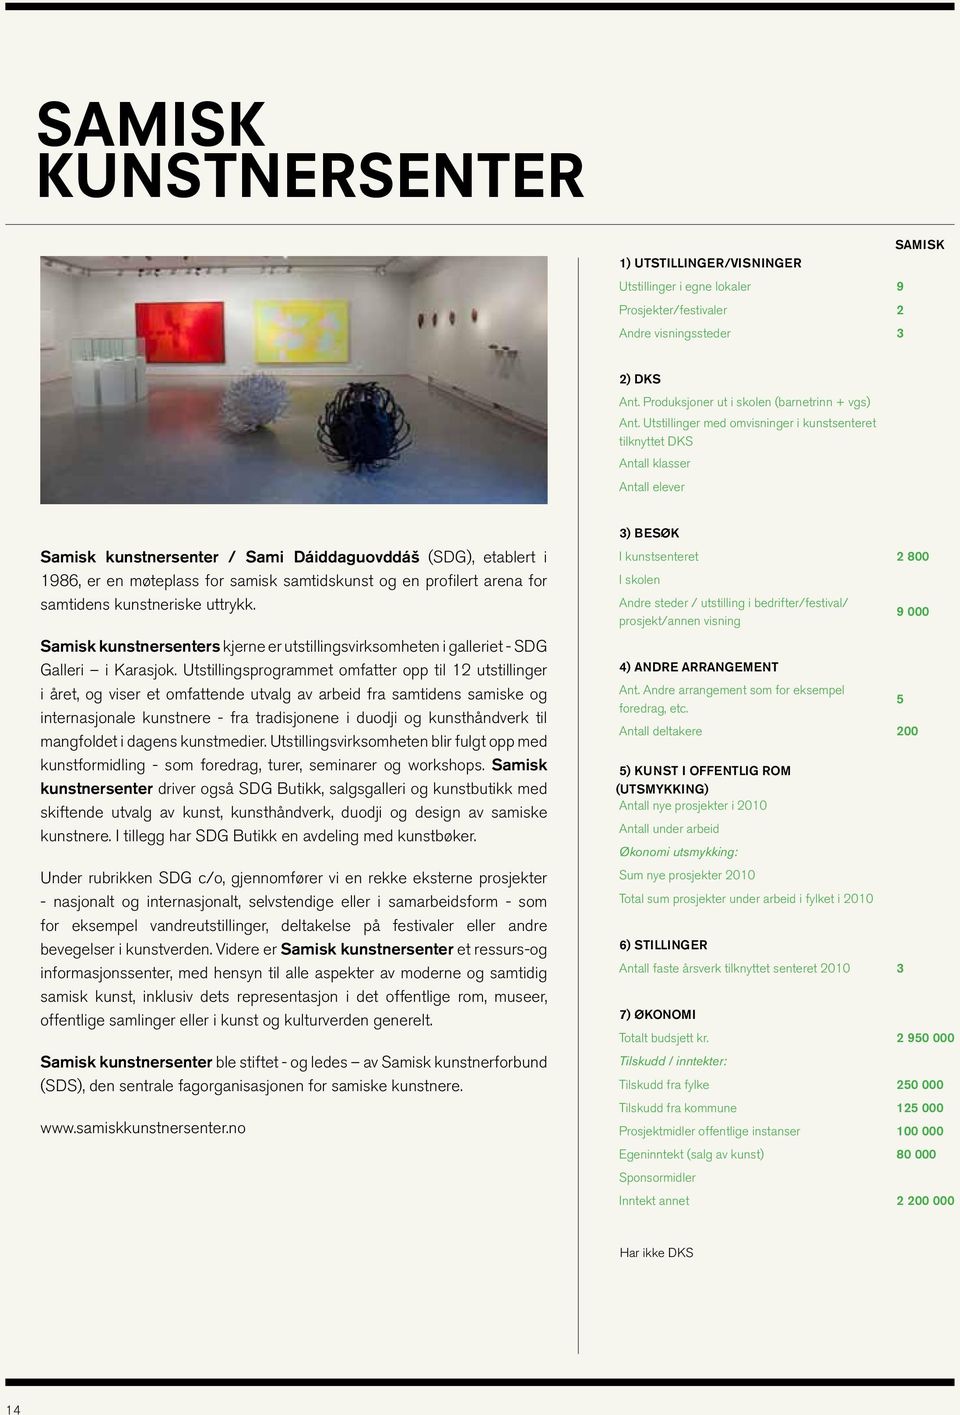 en profilert arena for samtidens kunstneriske uttrykk. Samisk kunstnersenters kjerne er utstillingsvirksomheten i galleriet - SDG Galleri i Karasjok.